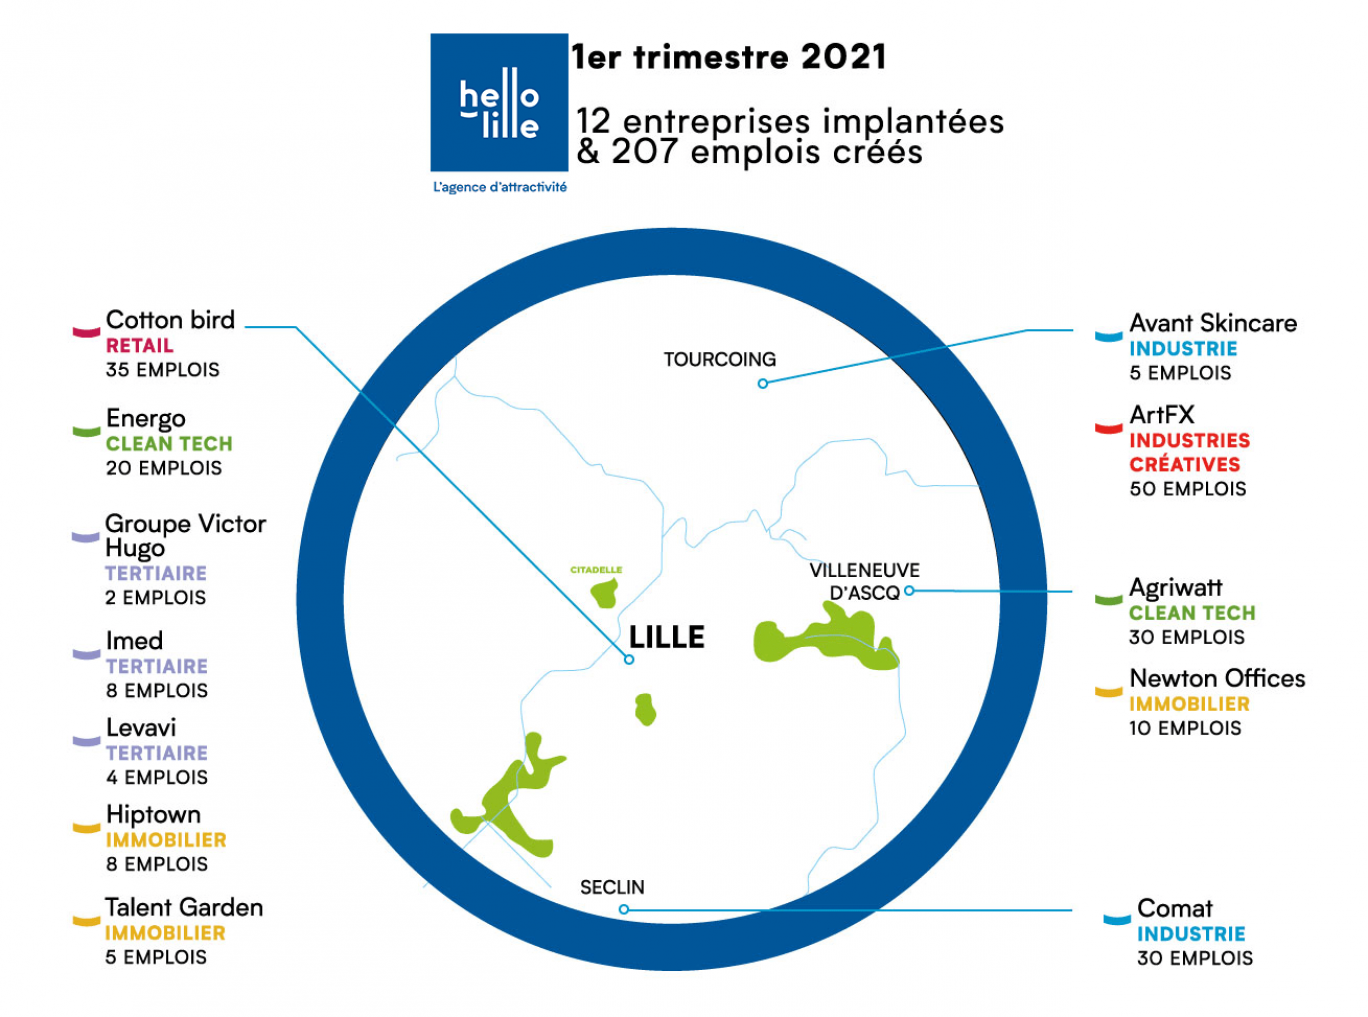 12 nouvelles entreprises dans la métropole de Lille cette année grâce à Hello Lille